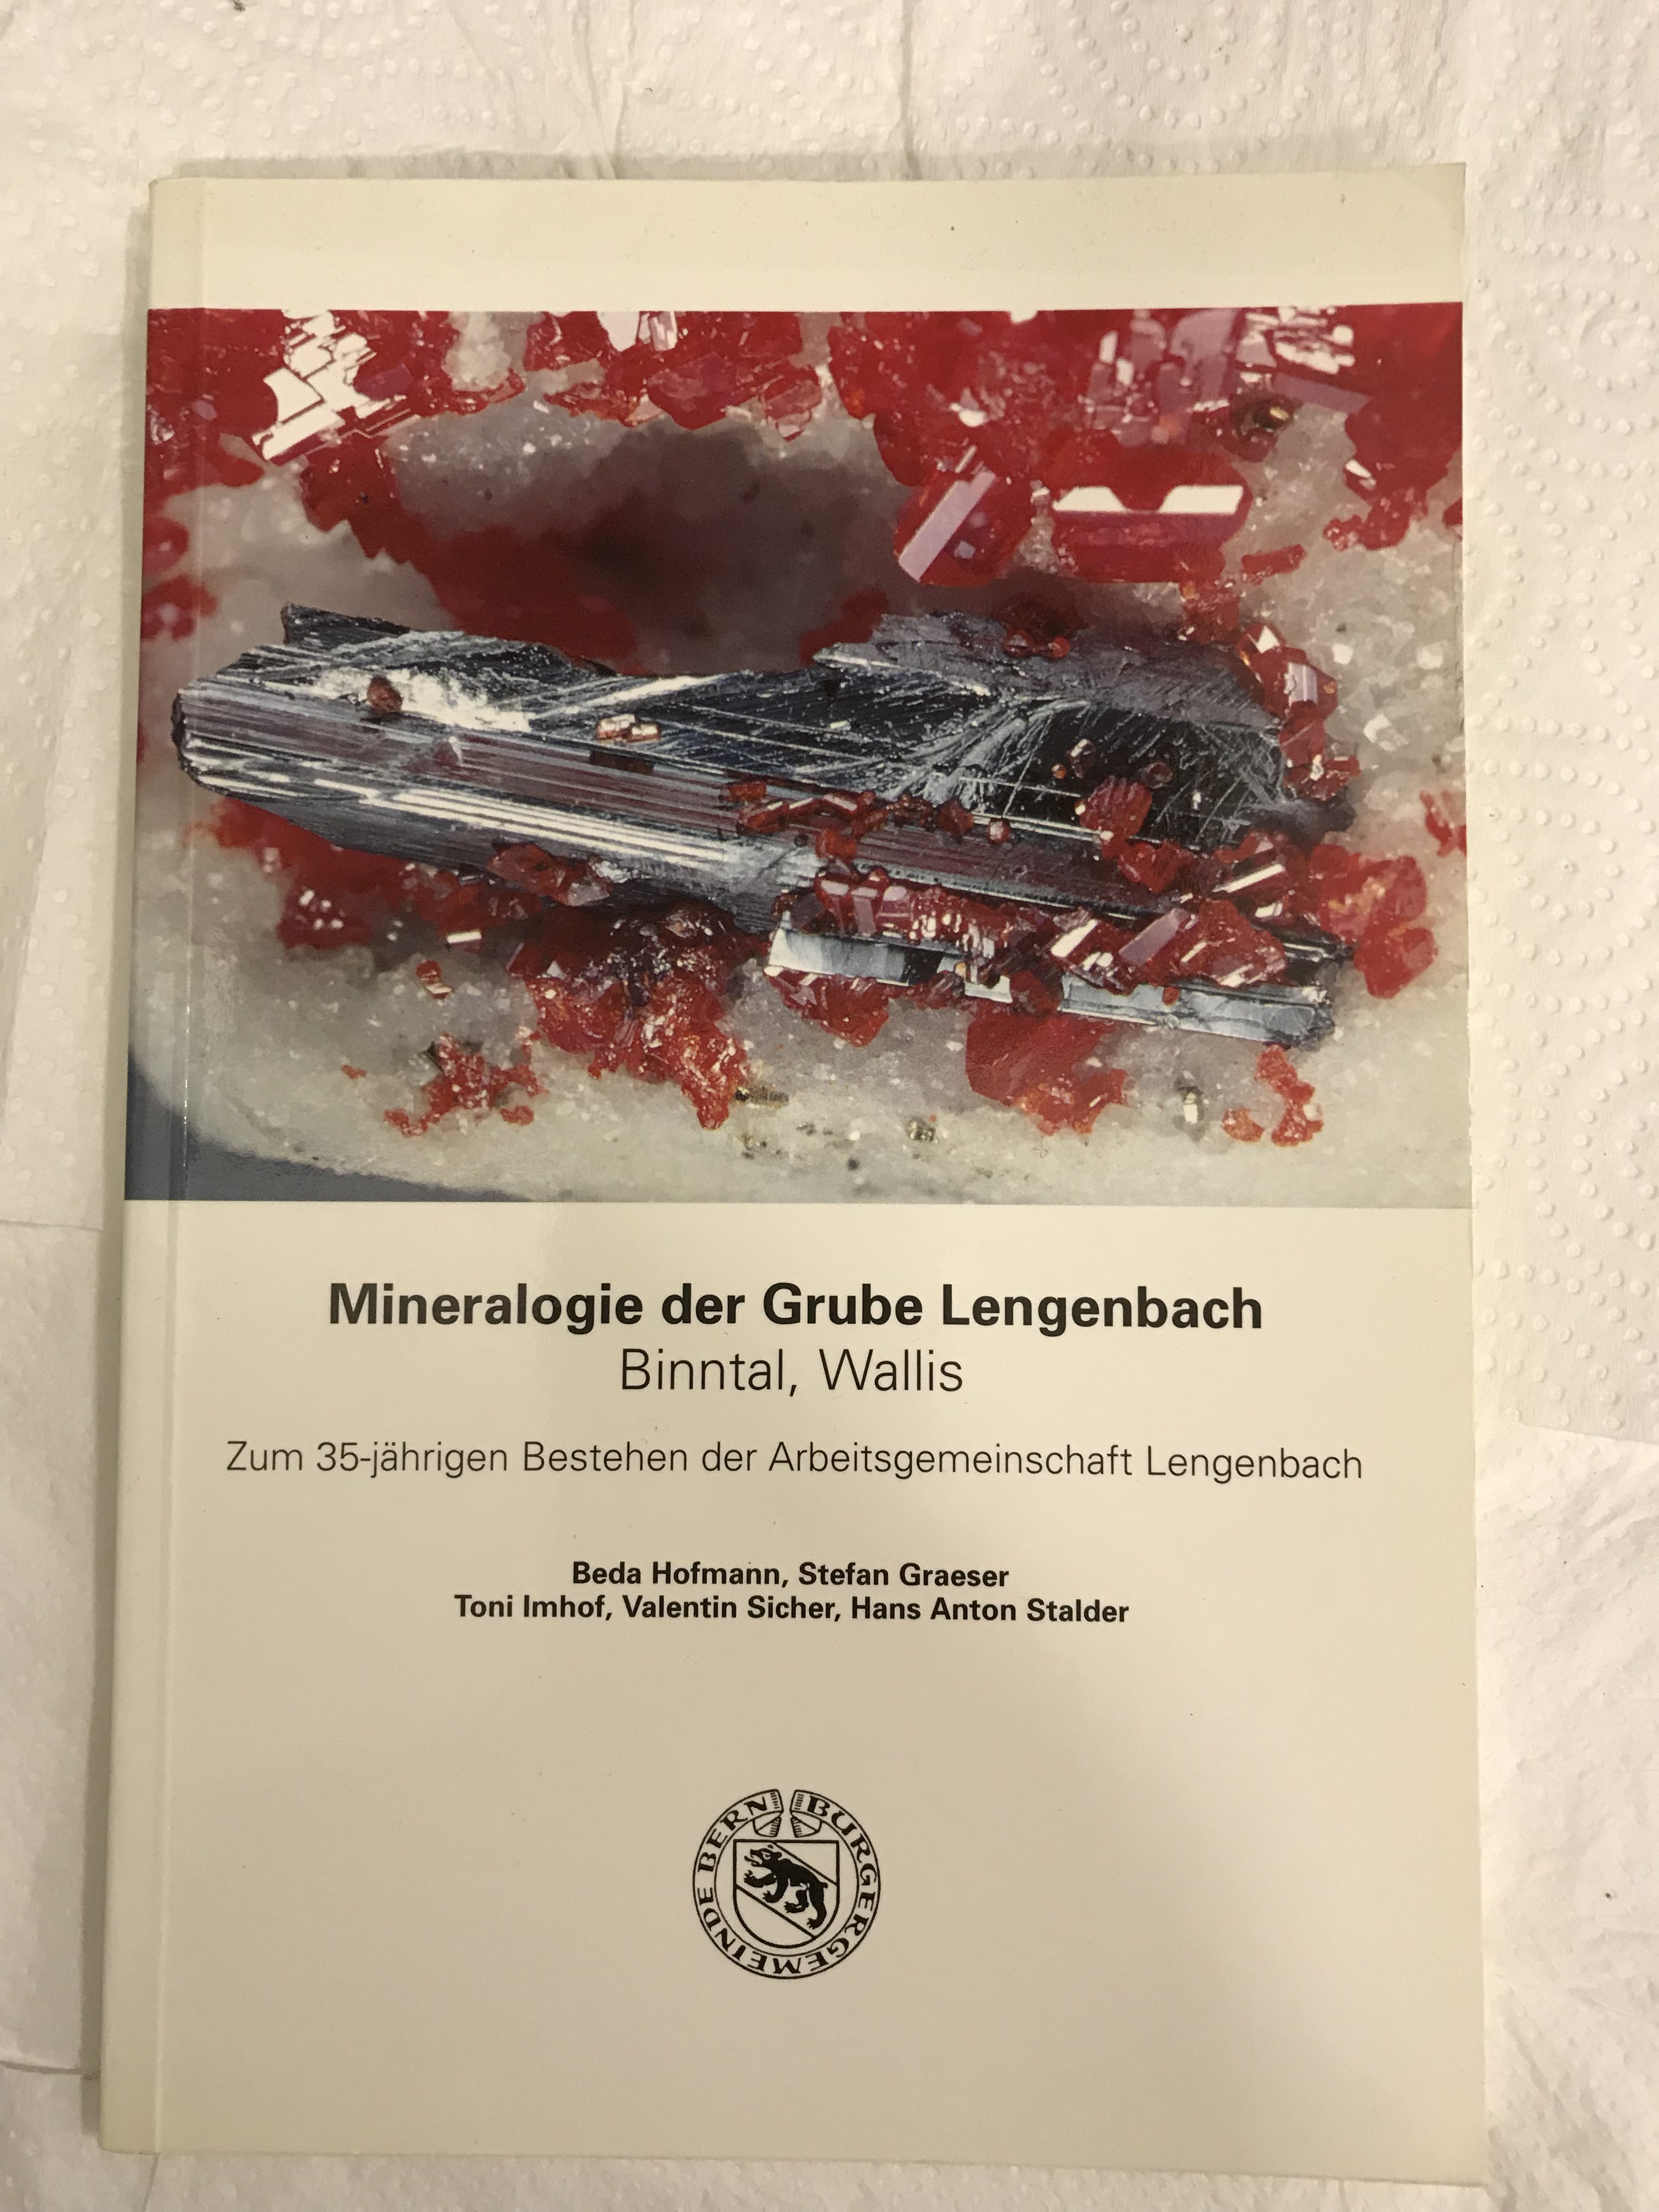 Mineralogie der Grube Lengenbach (Binntal, Wallis)